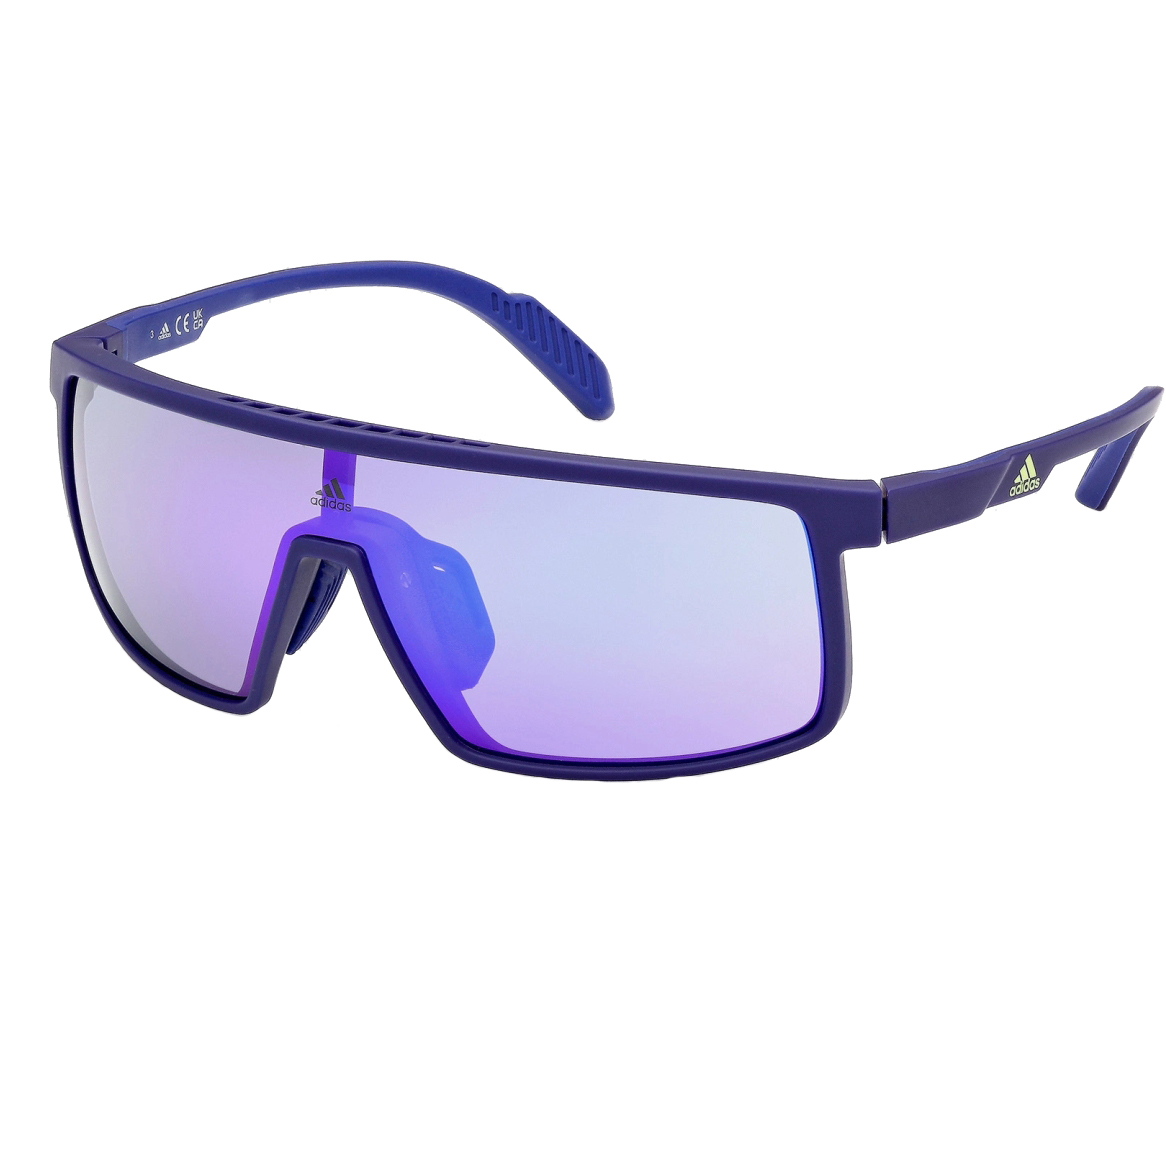 Produktbild von adidas Prfm Shield SP0057 Sport Sonnenbrille - Blue/Other / Contrast Mirror Violet